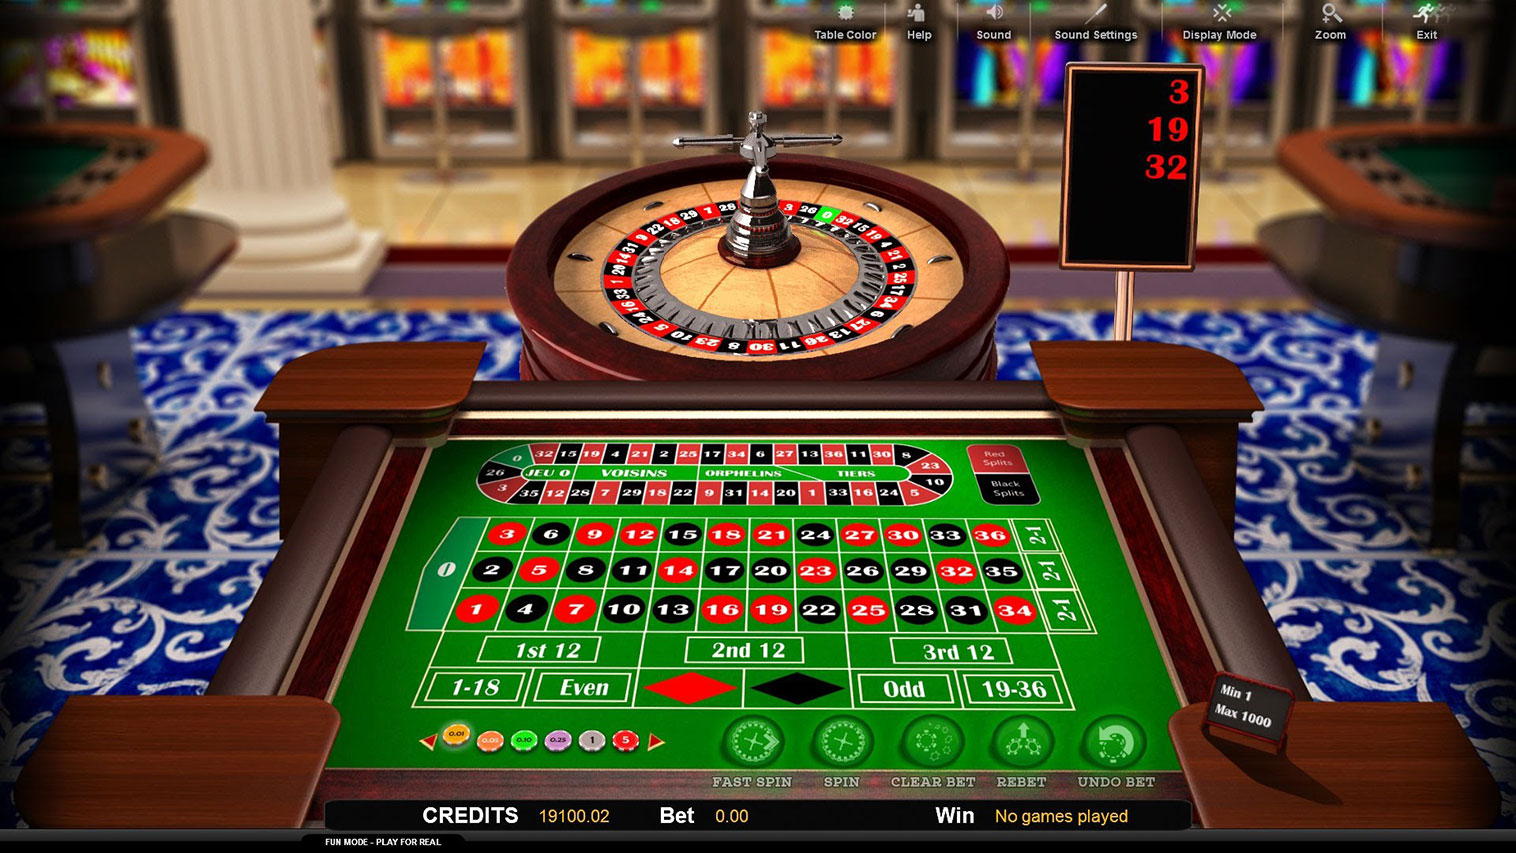 Игровые автоматы покер играть бесплатно и без регистрации казино онлайн на айфон kazino reiting2 com